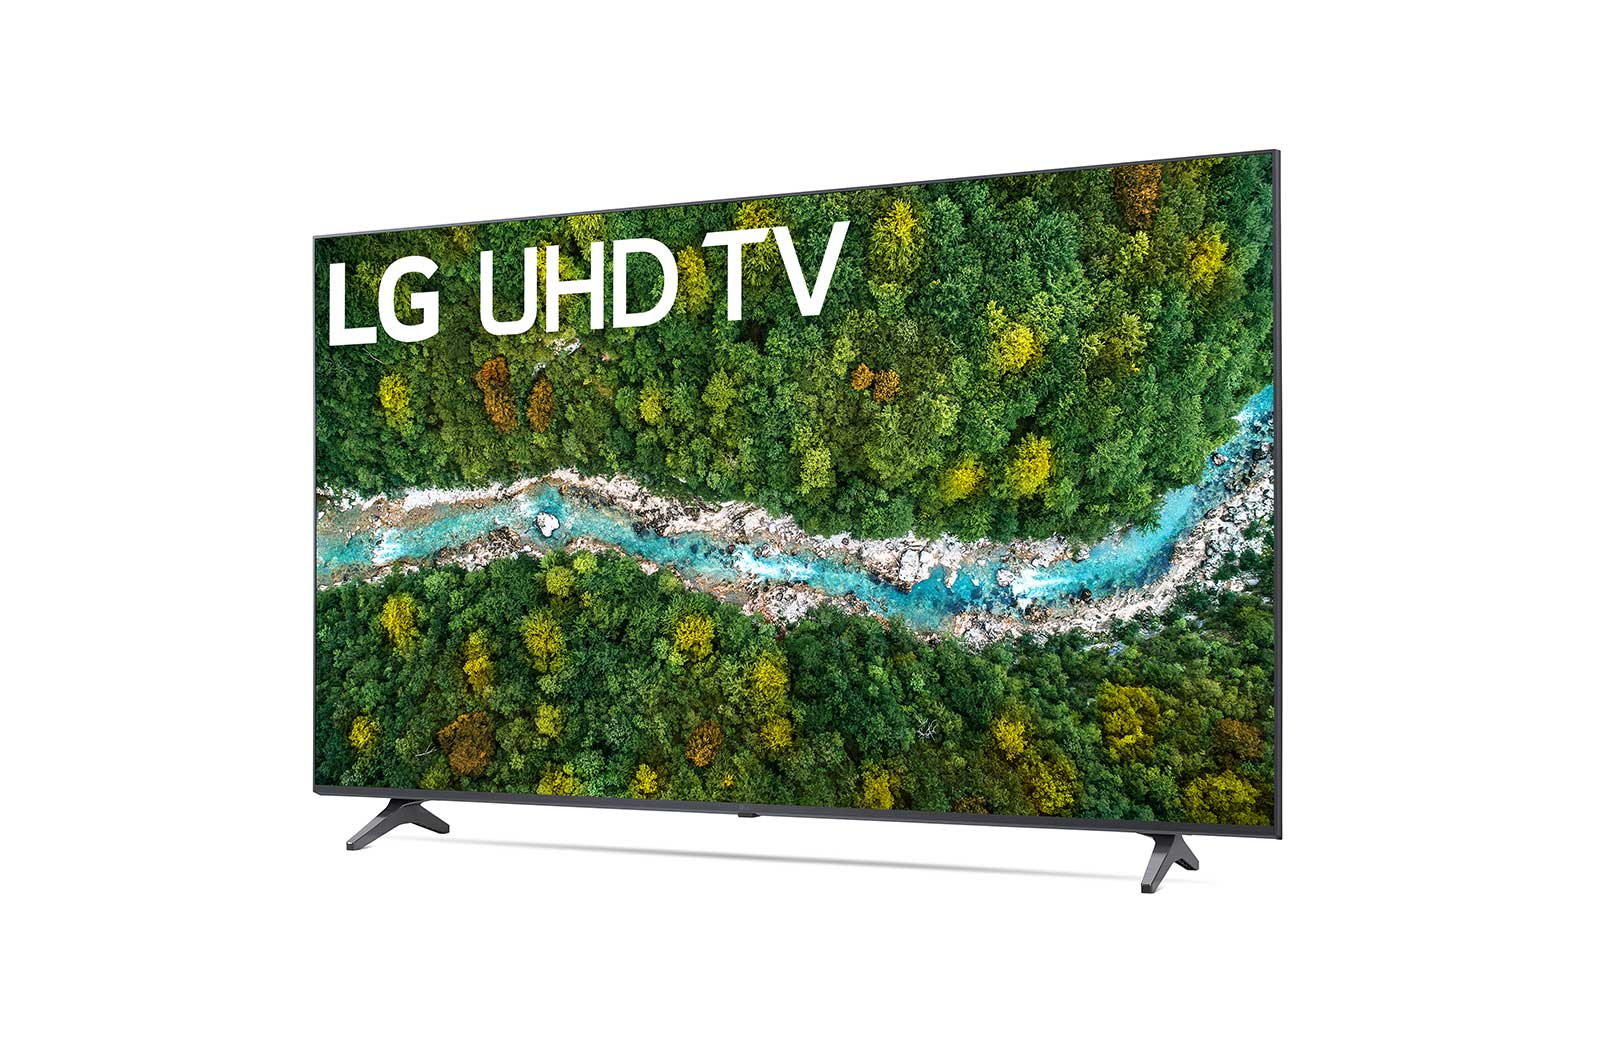 LG 50" Class 4K Smart UHD TV w/AI ThinQ